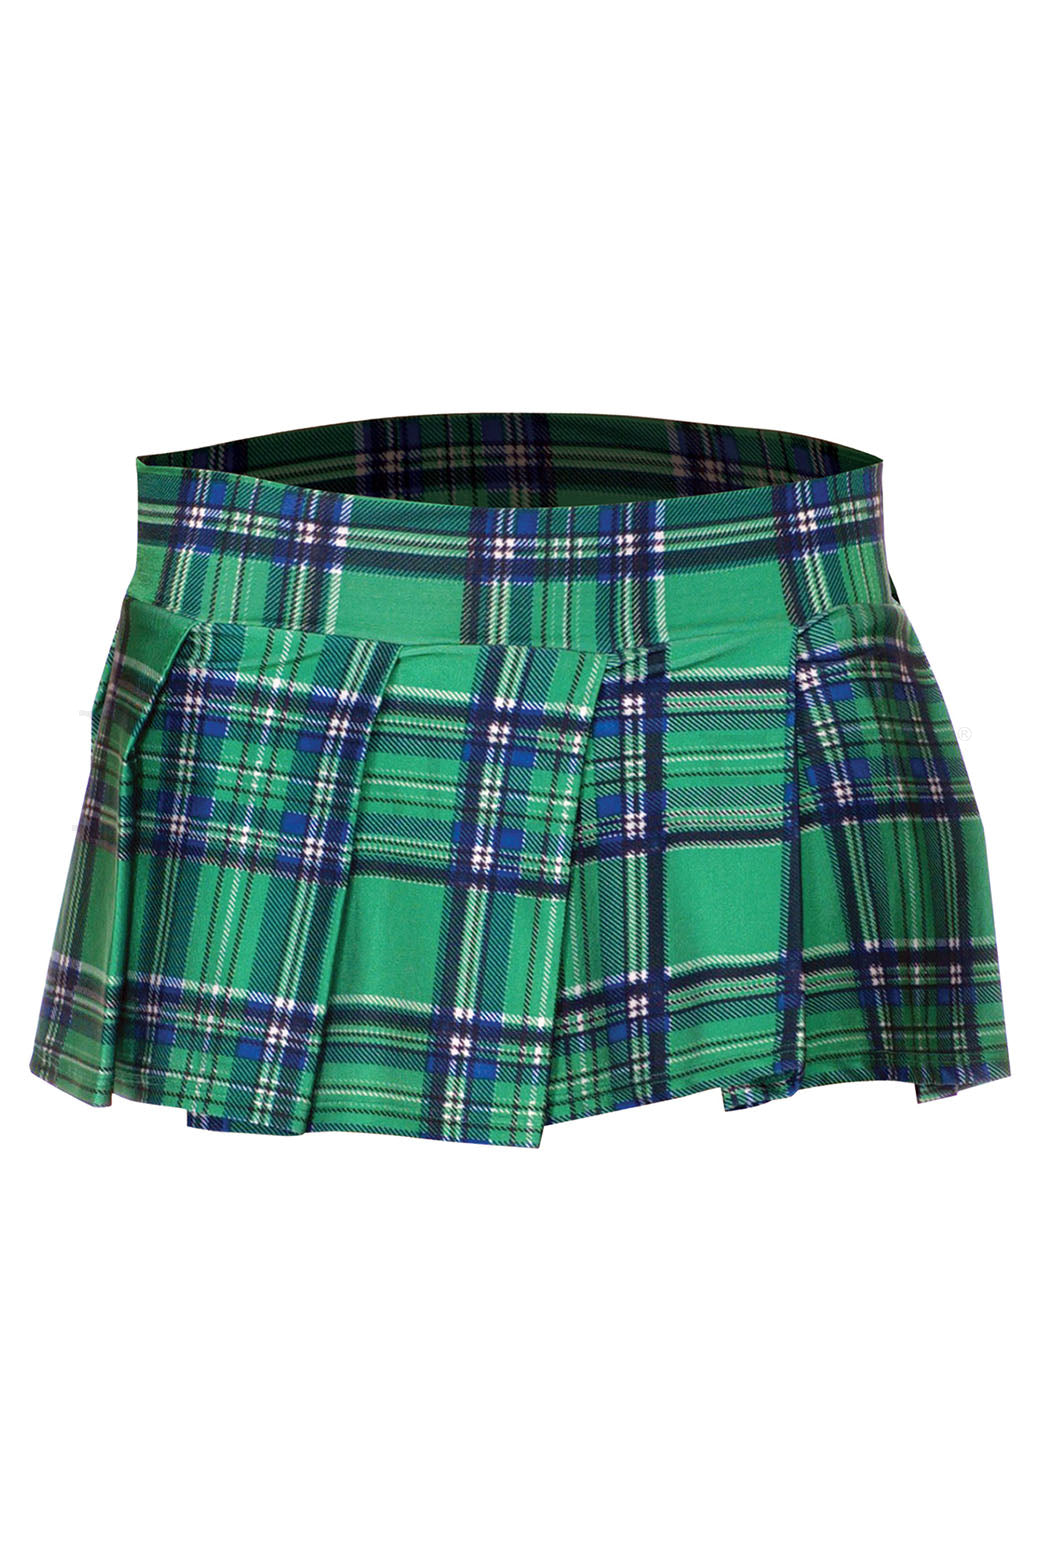 Margot Plaid Pleated Mini Skirt